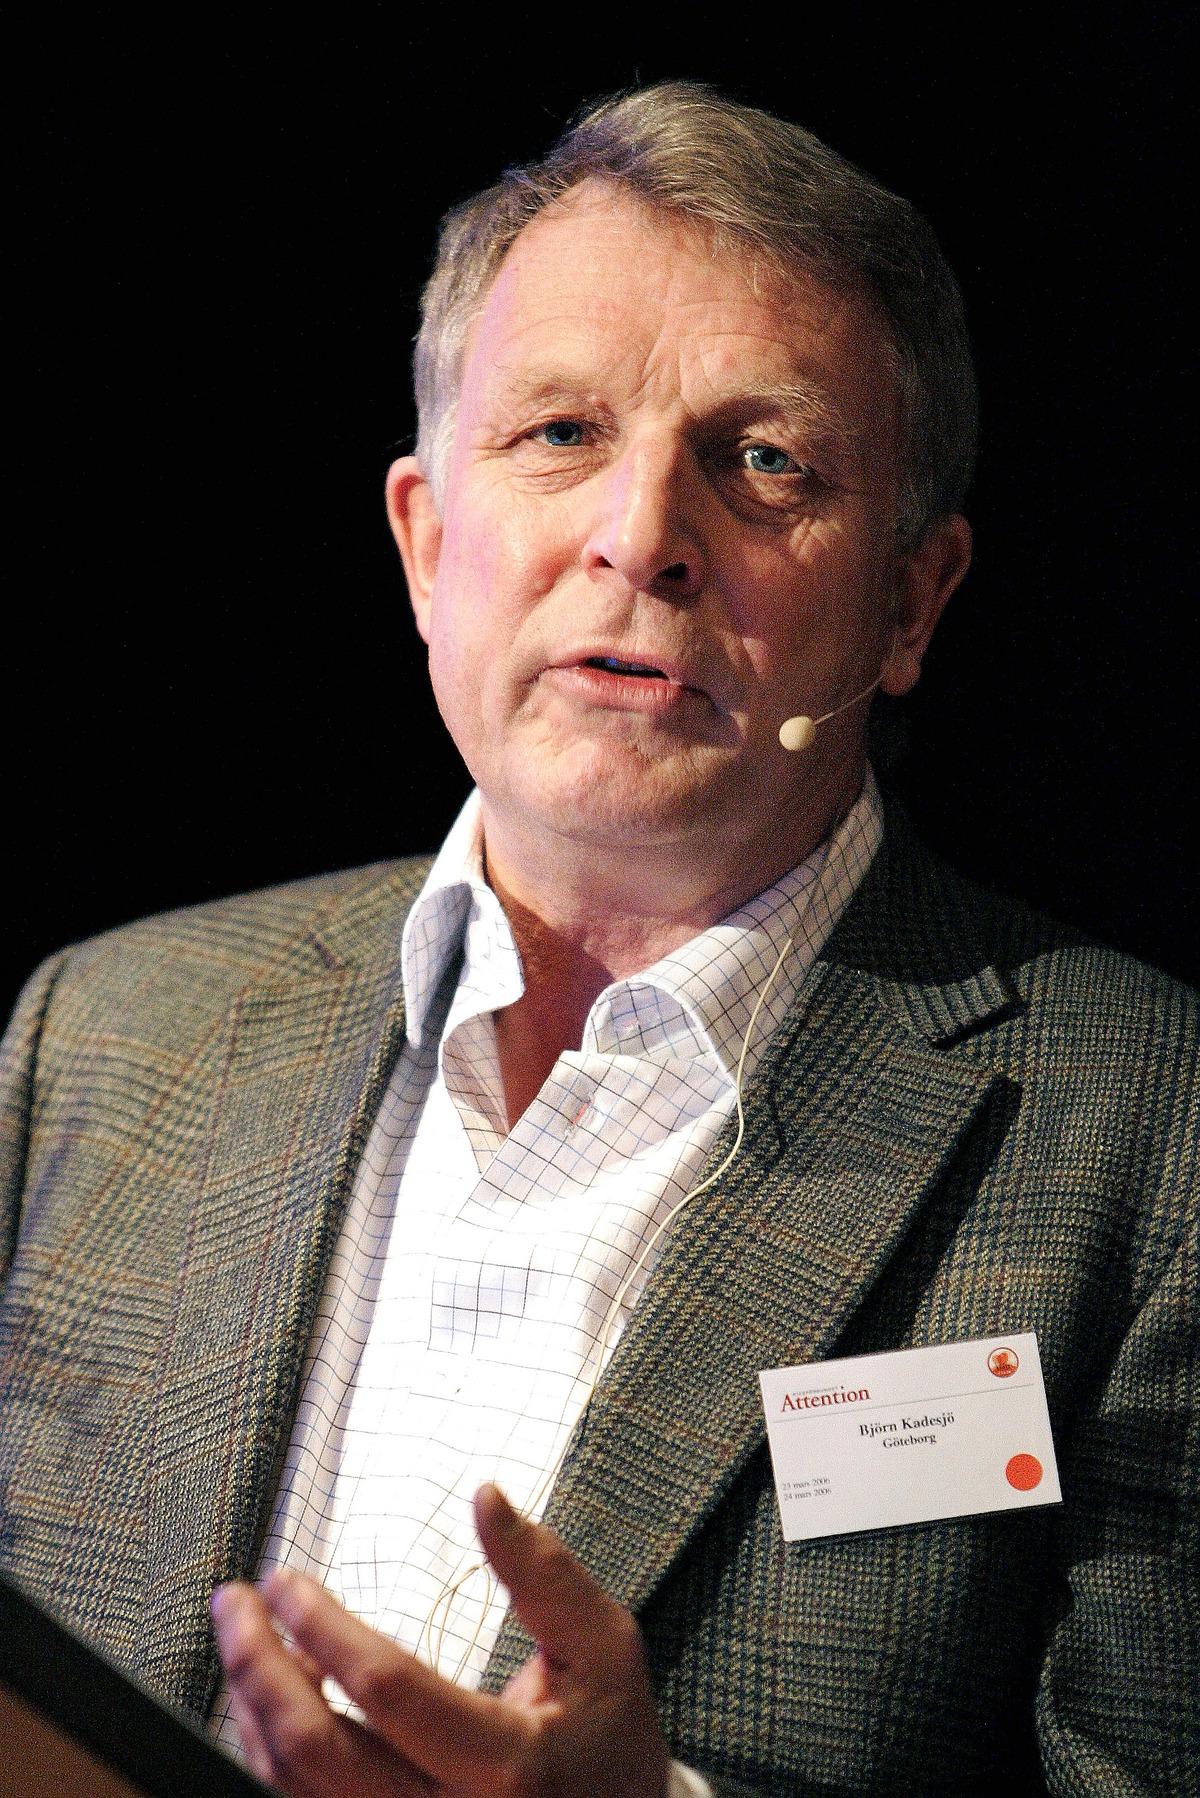 SATT PÅ TVÅ STOLAR  Björn Kadesjö anlitades 2005 som rådgivare­ vid lanseringen­ av adhd-medicinen Strattera. 2008 ingick han i Läkemedelsverkets expertgrupp­ som utvärderar vilka­ adhd-mediciner som bör användas i Sverige.